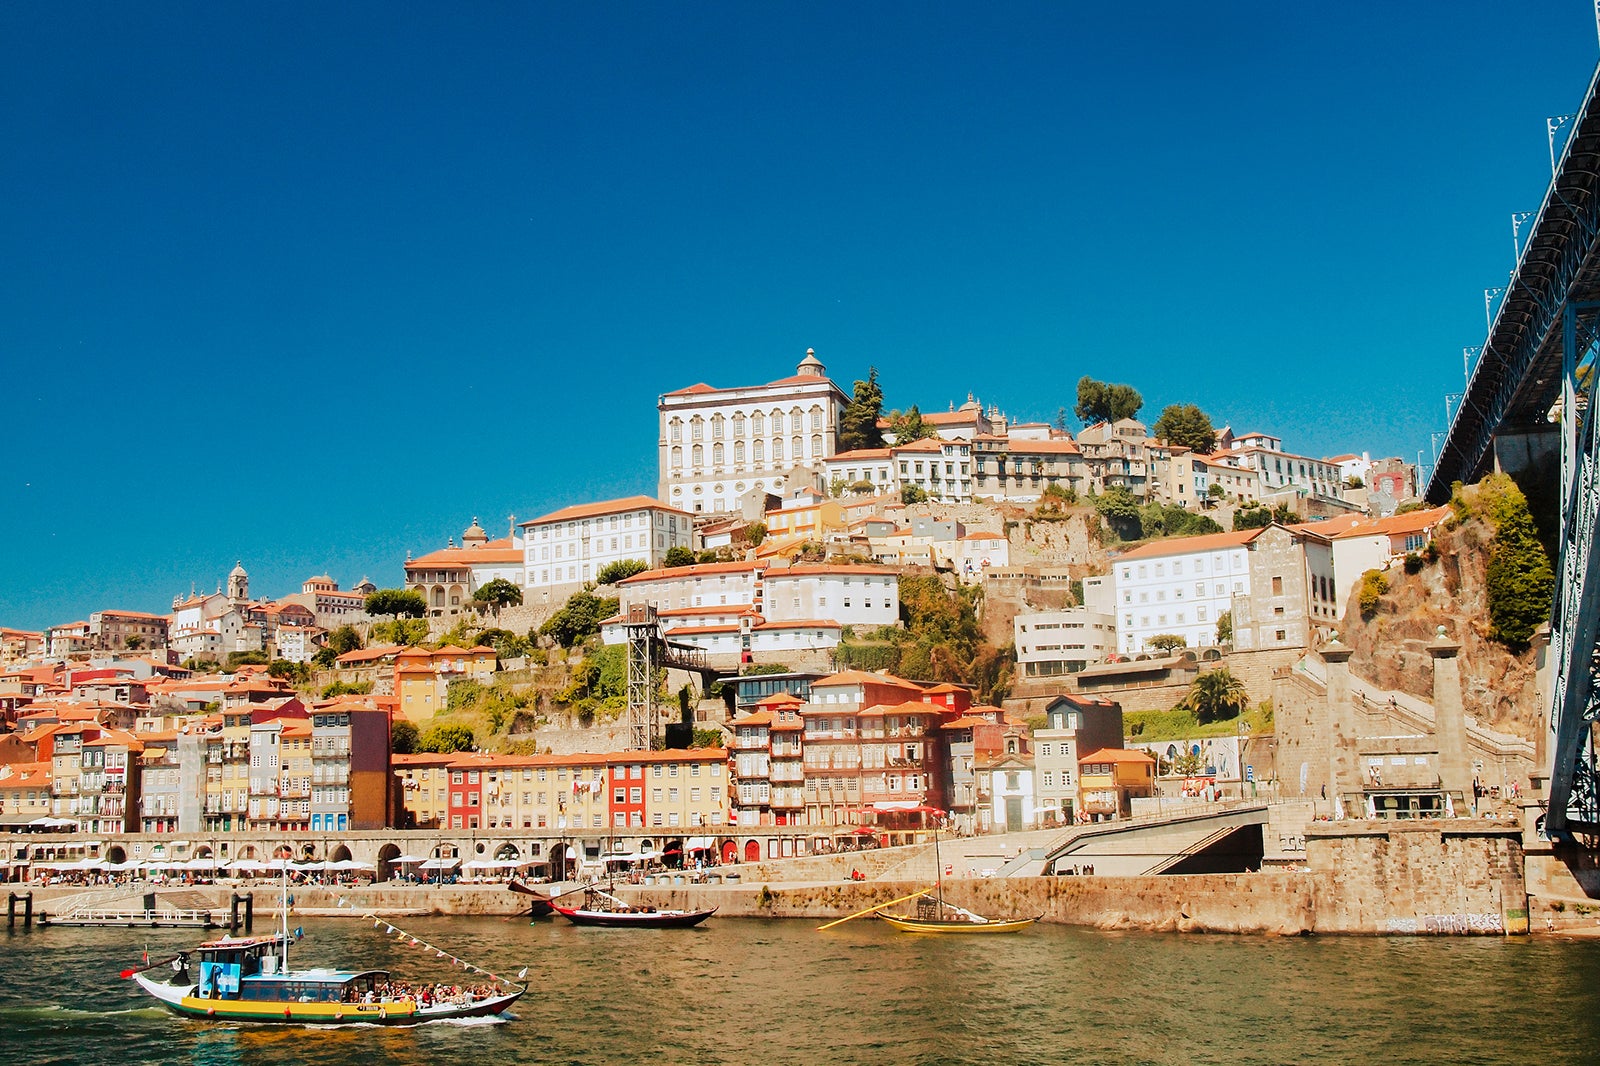 Portugal, Porto, Douro River and Riverside